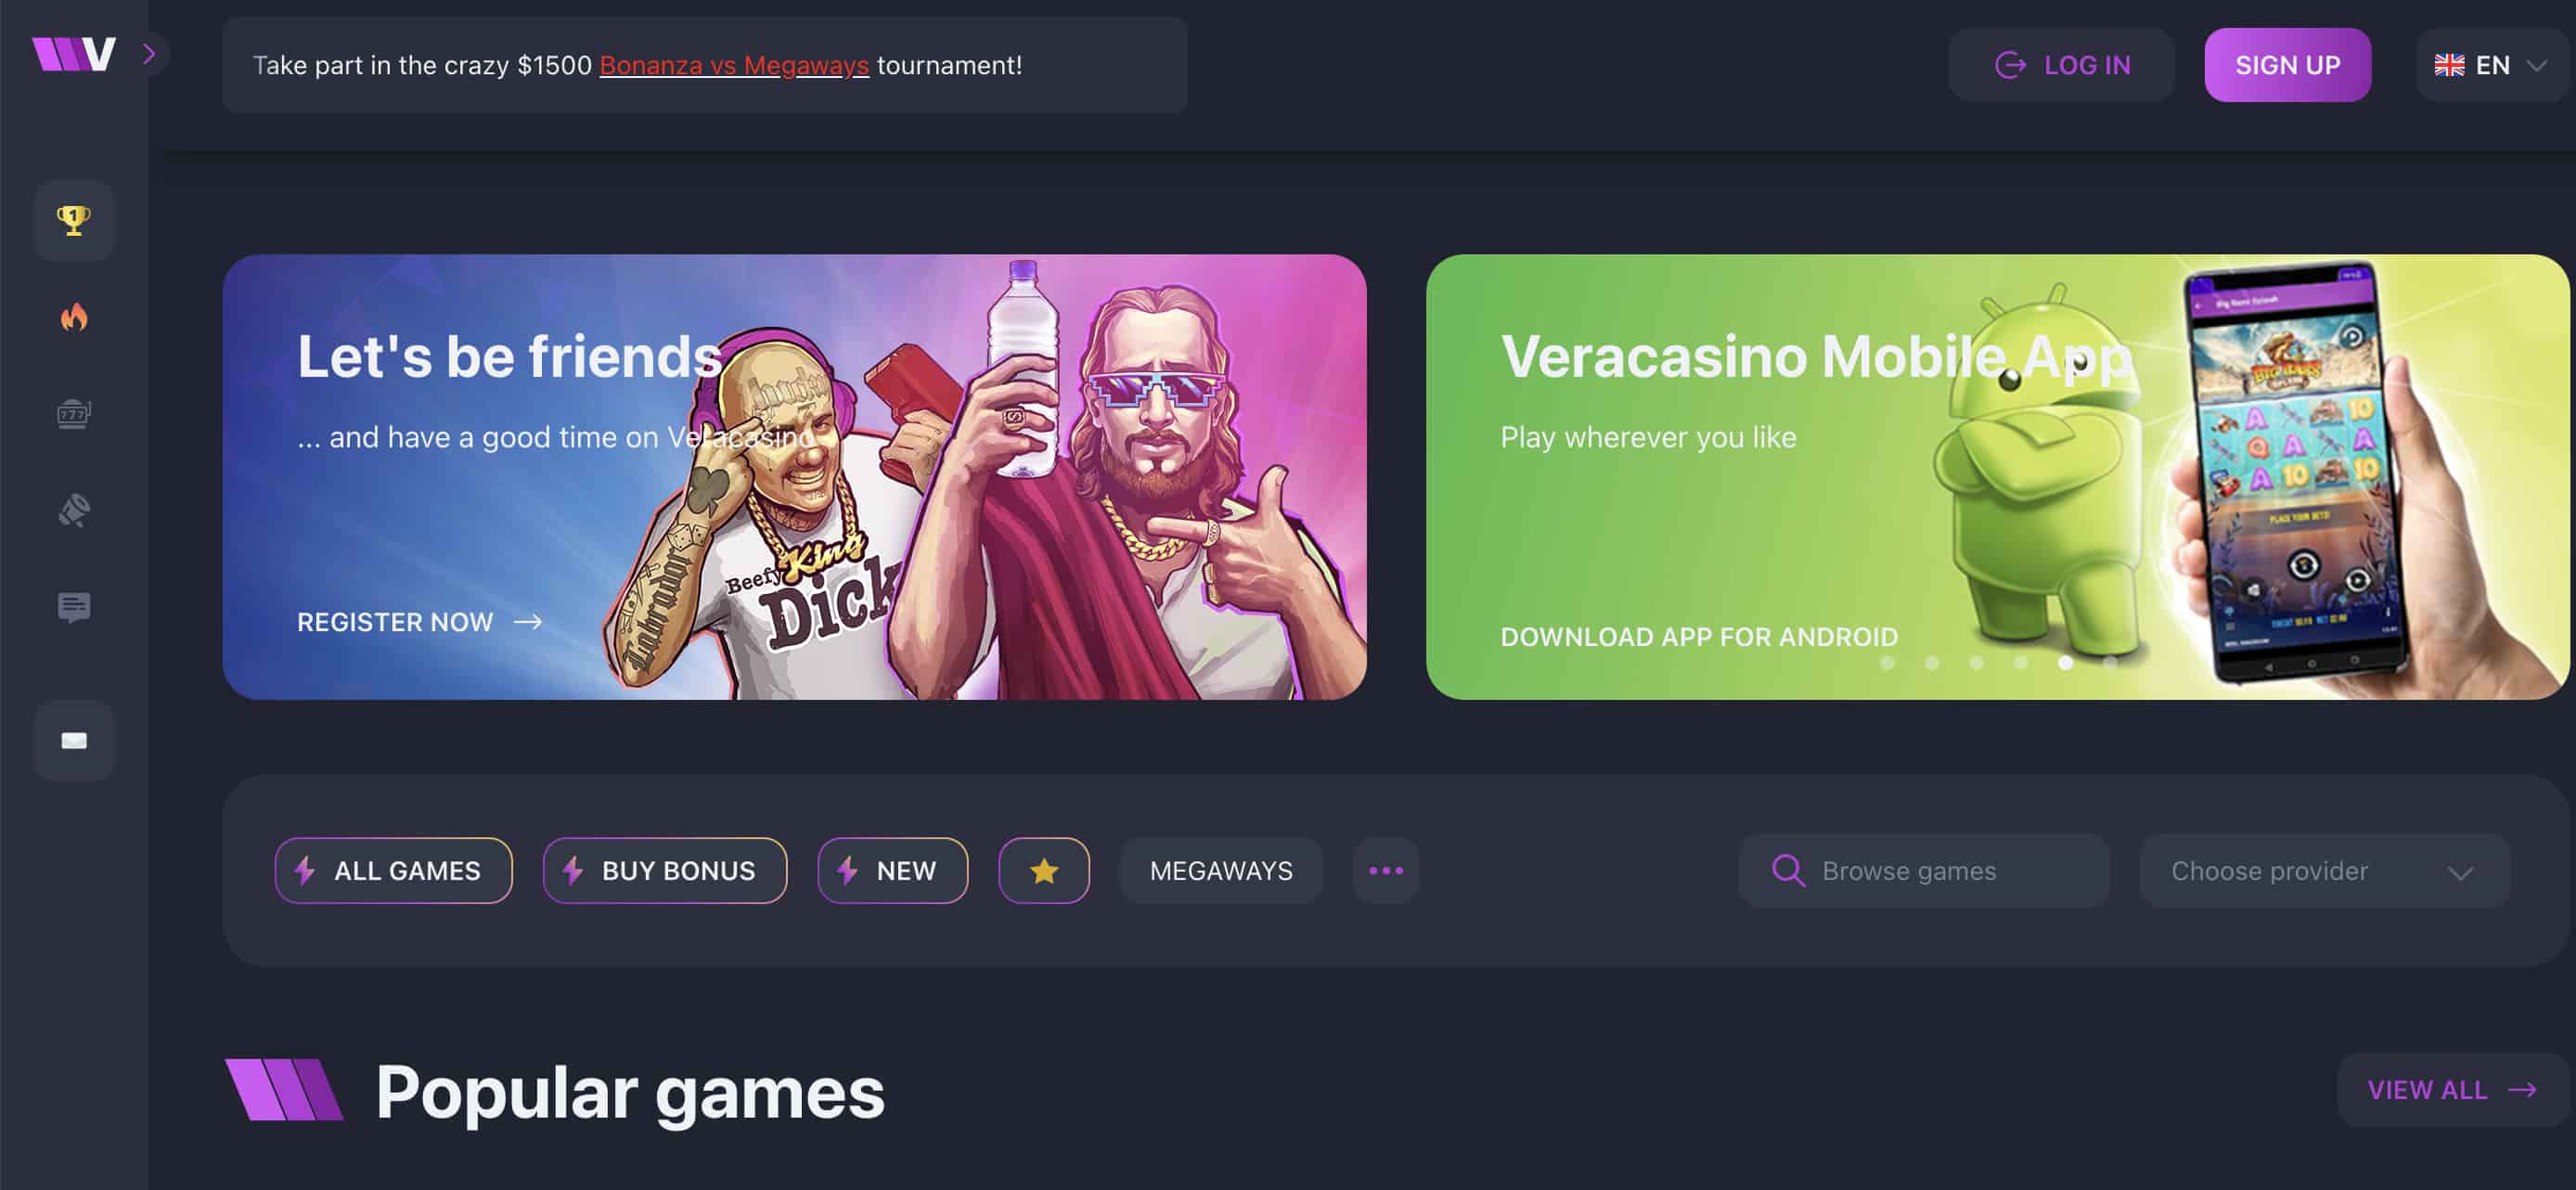 vera.casino homepage screenshot